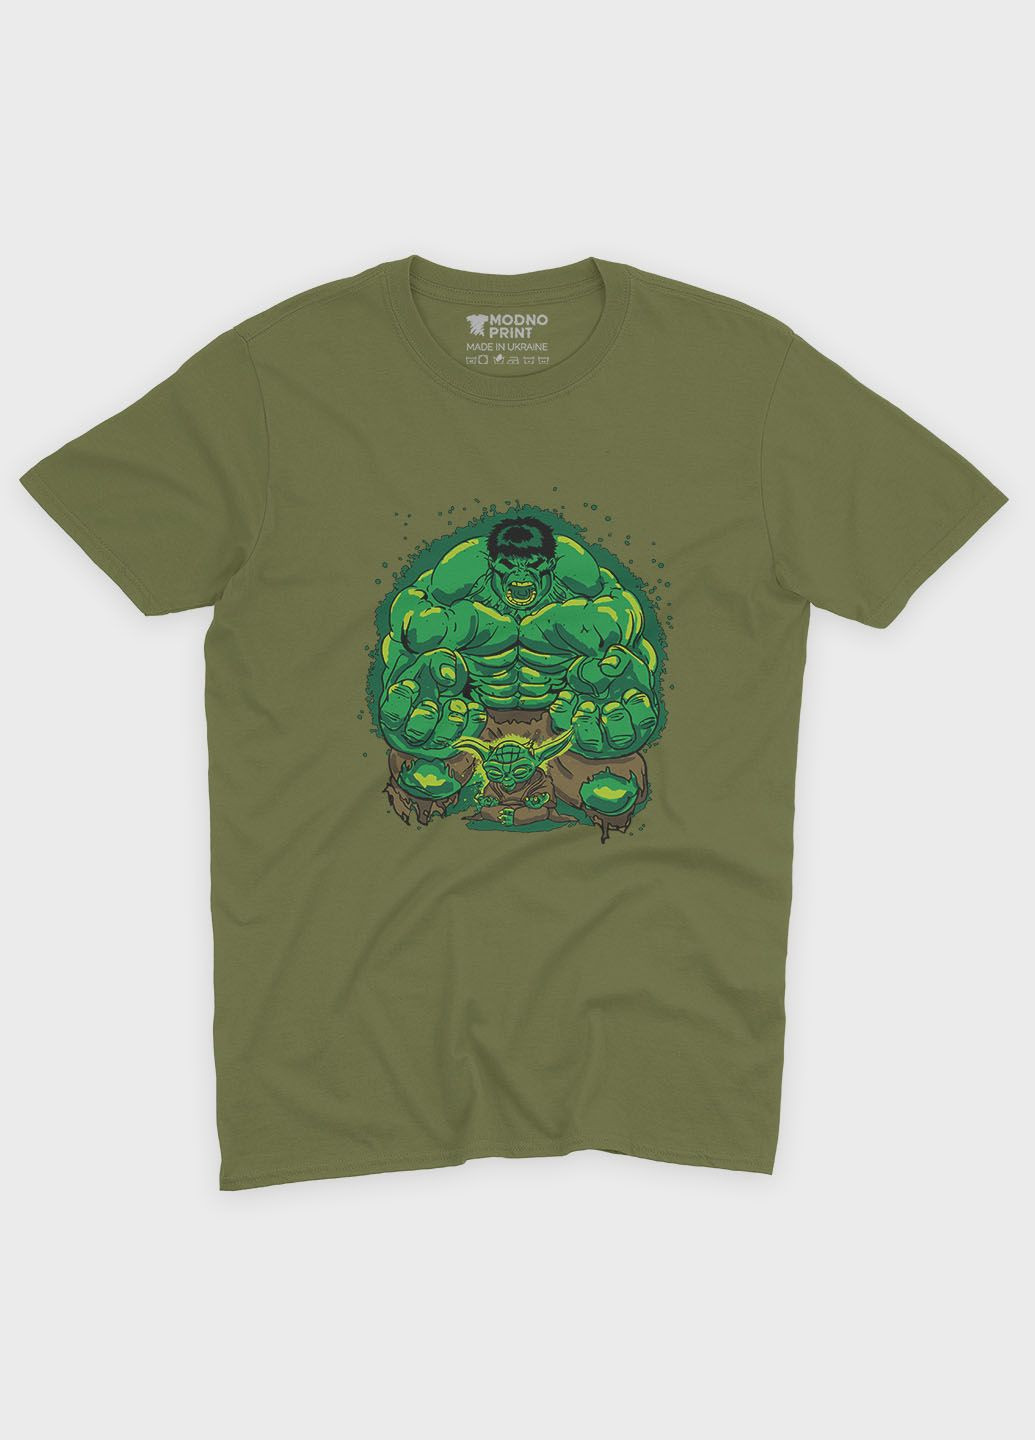 Хаки (оливковая) мужская футболка с принтом супергероя - халк (ts001-1-hgr-006-018-003) Modno